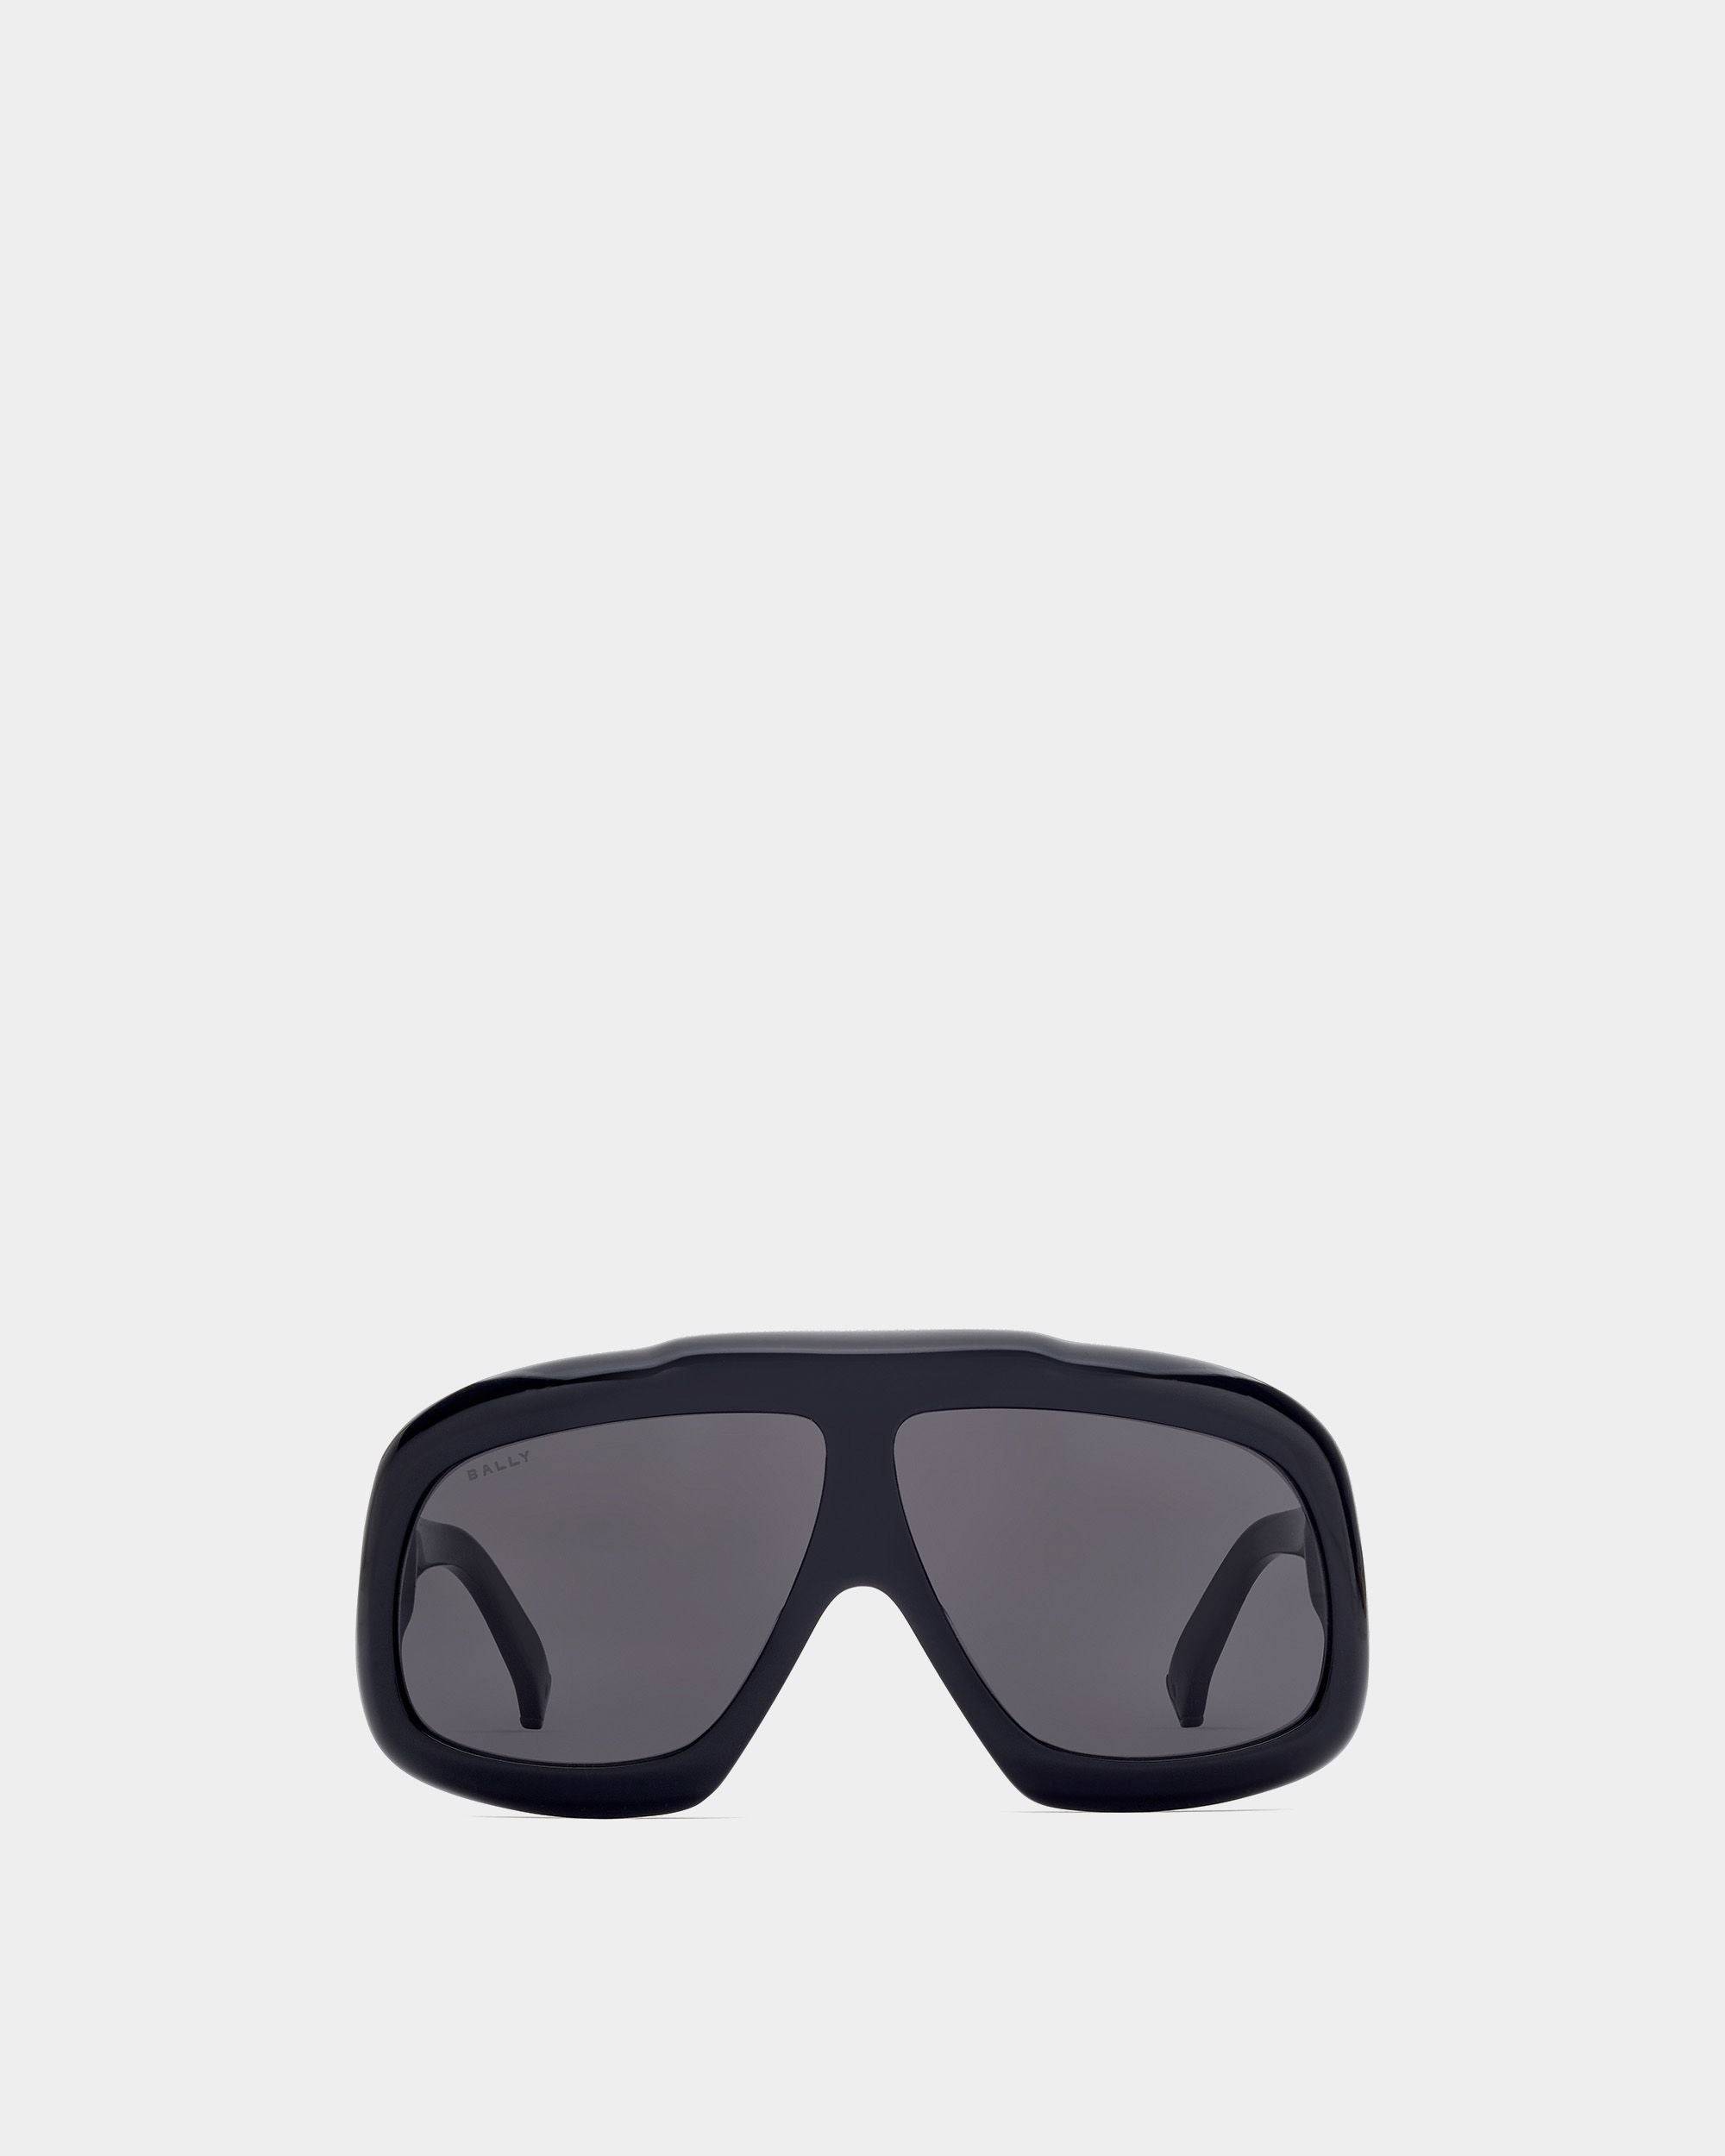 Eyger Sonnenbrille | Unisex-Accessoires | Schwarzes Acetat mit rauchgrauen Gläsern | Bally | Still Life Vorderseite